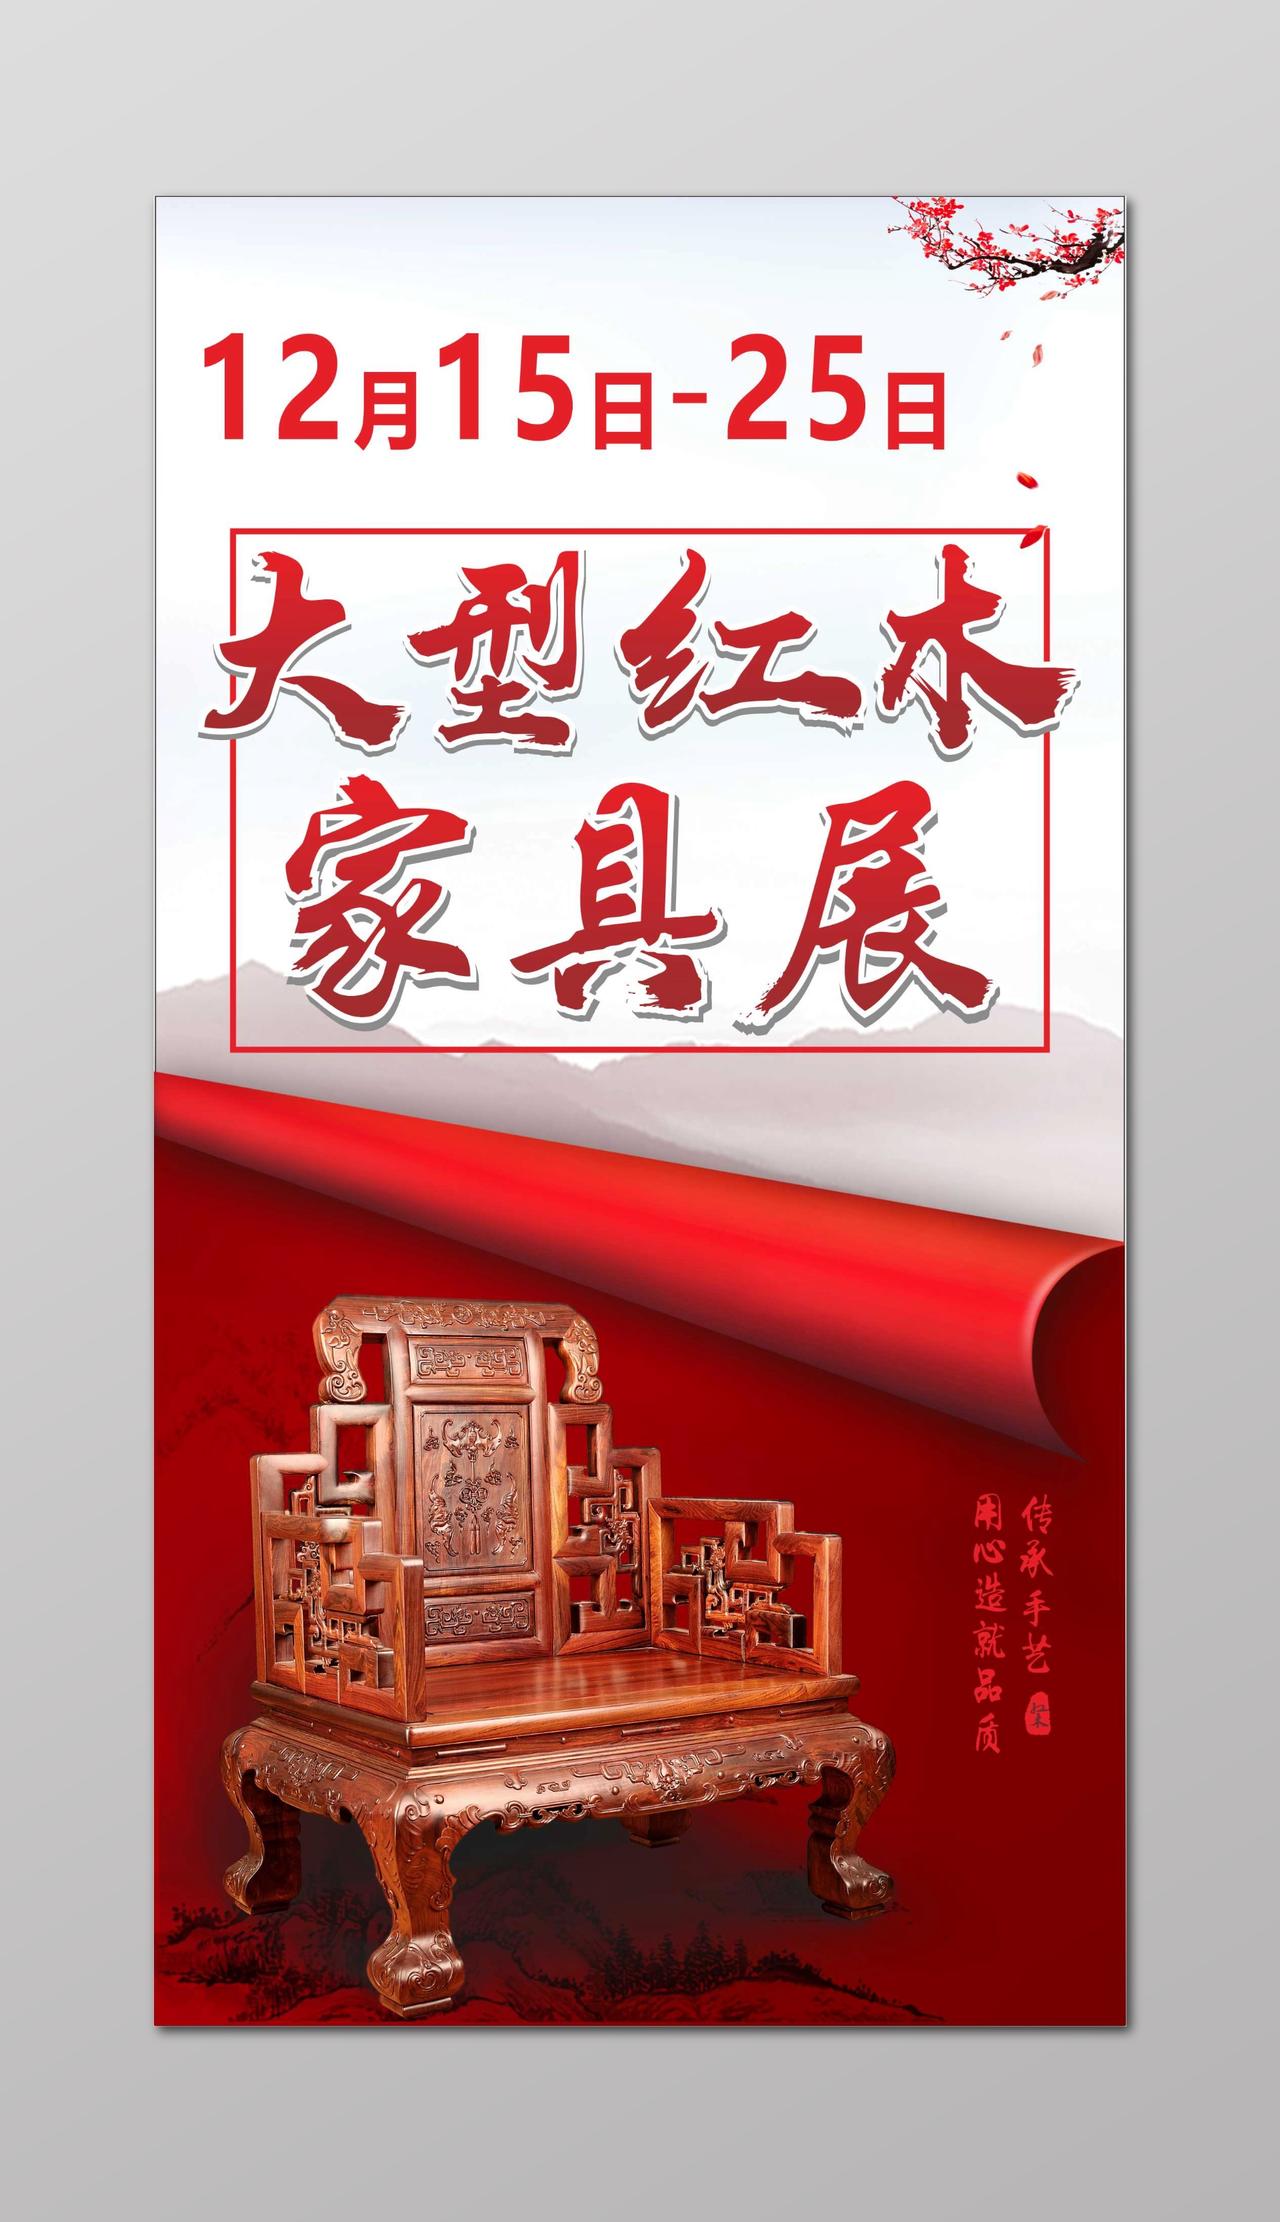 大型红木家具促销室内装饰中国红宣传单